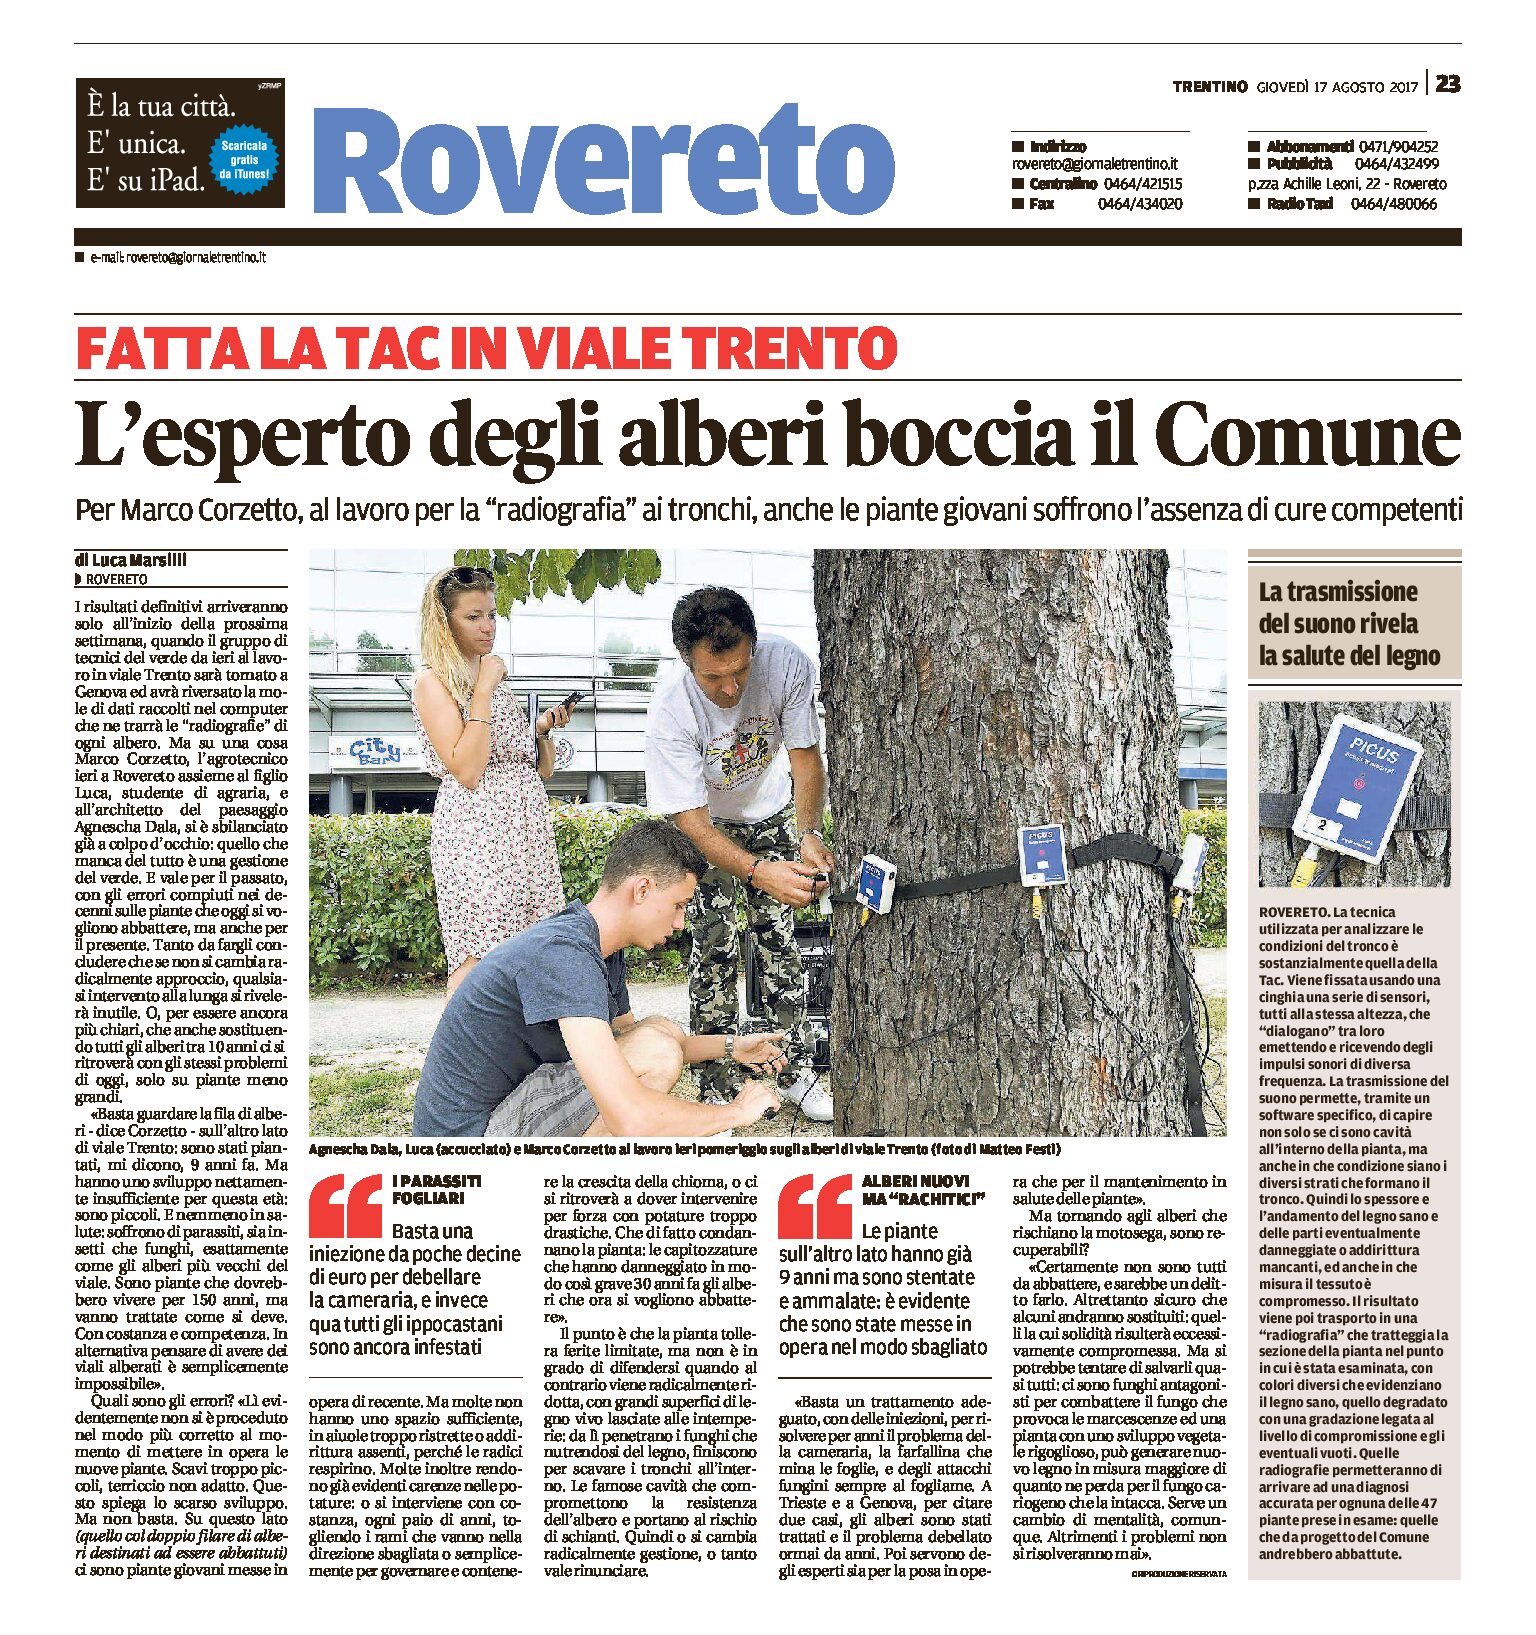 Rovereto, viale Trento: l’esperto degli alberi boccia il Comune. Fatta la Tac